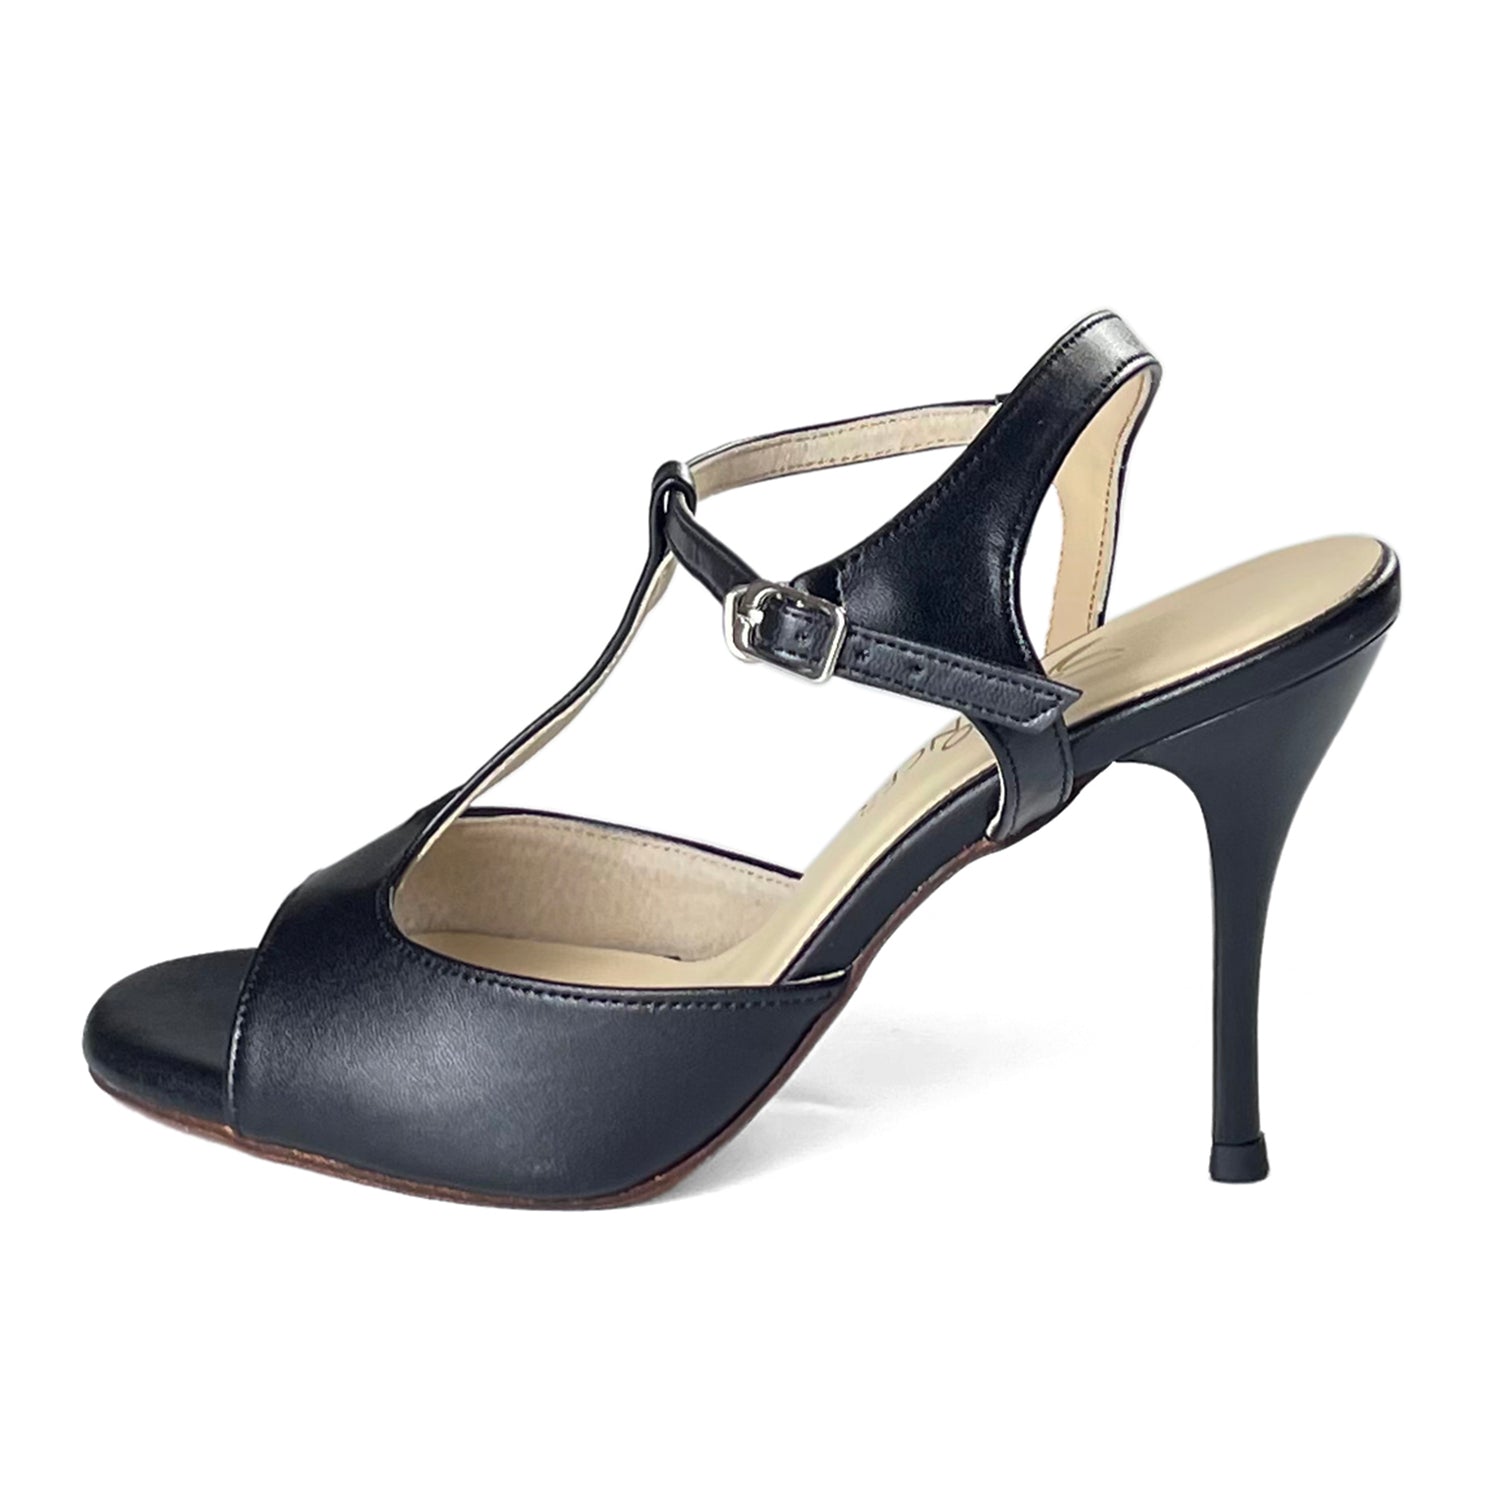 Pro Dancer Women's Tango Shoes high heel black leather sole dance sandals PD-9012D Argentina2